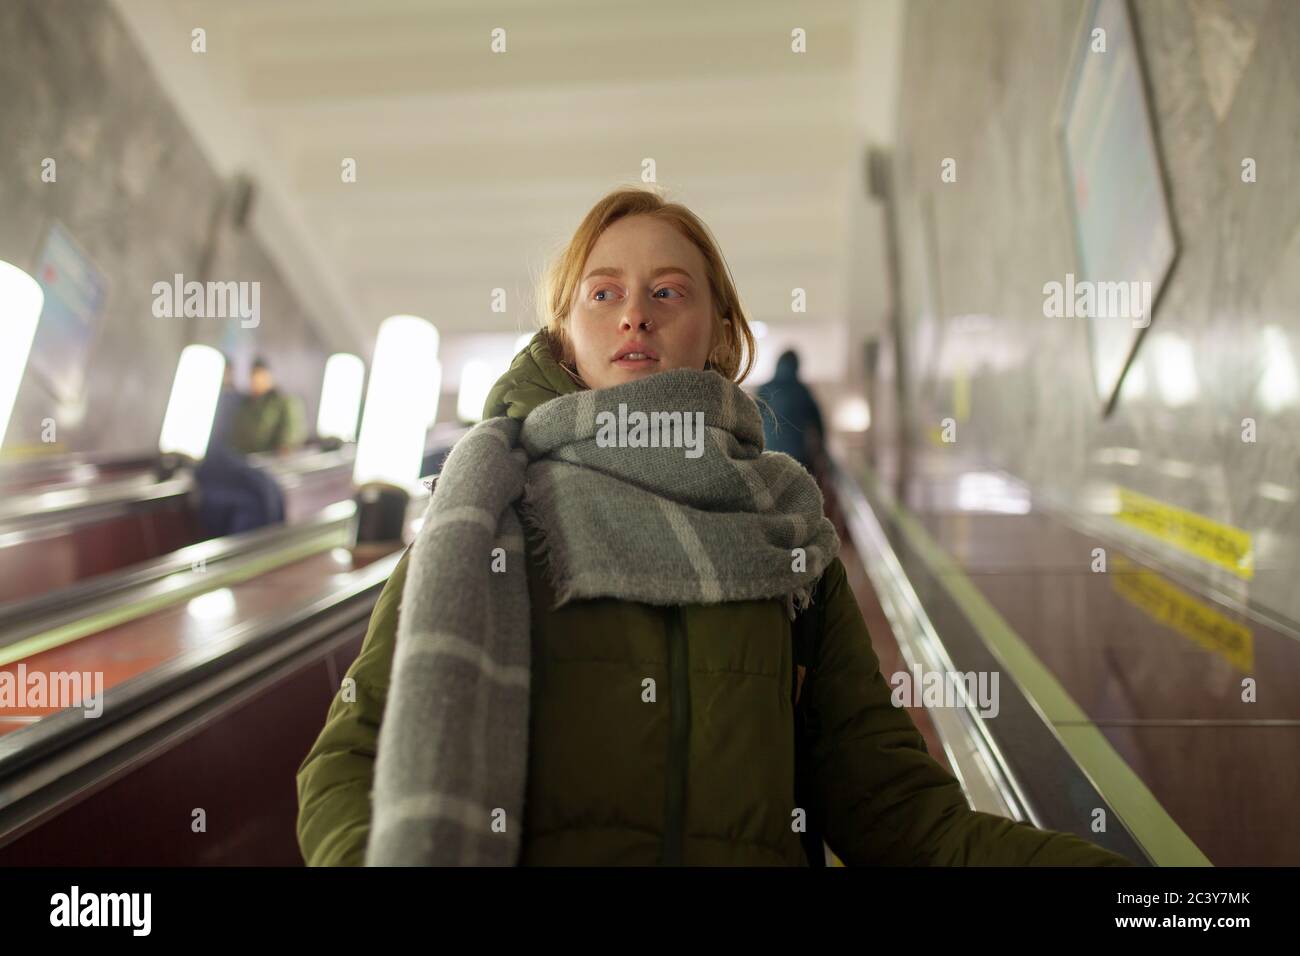 Russie, Novosibirsk, jeune femme debout sur l'escalator Banque D'Images